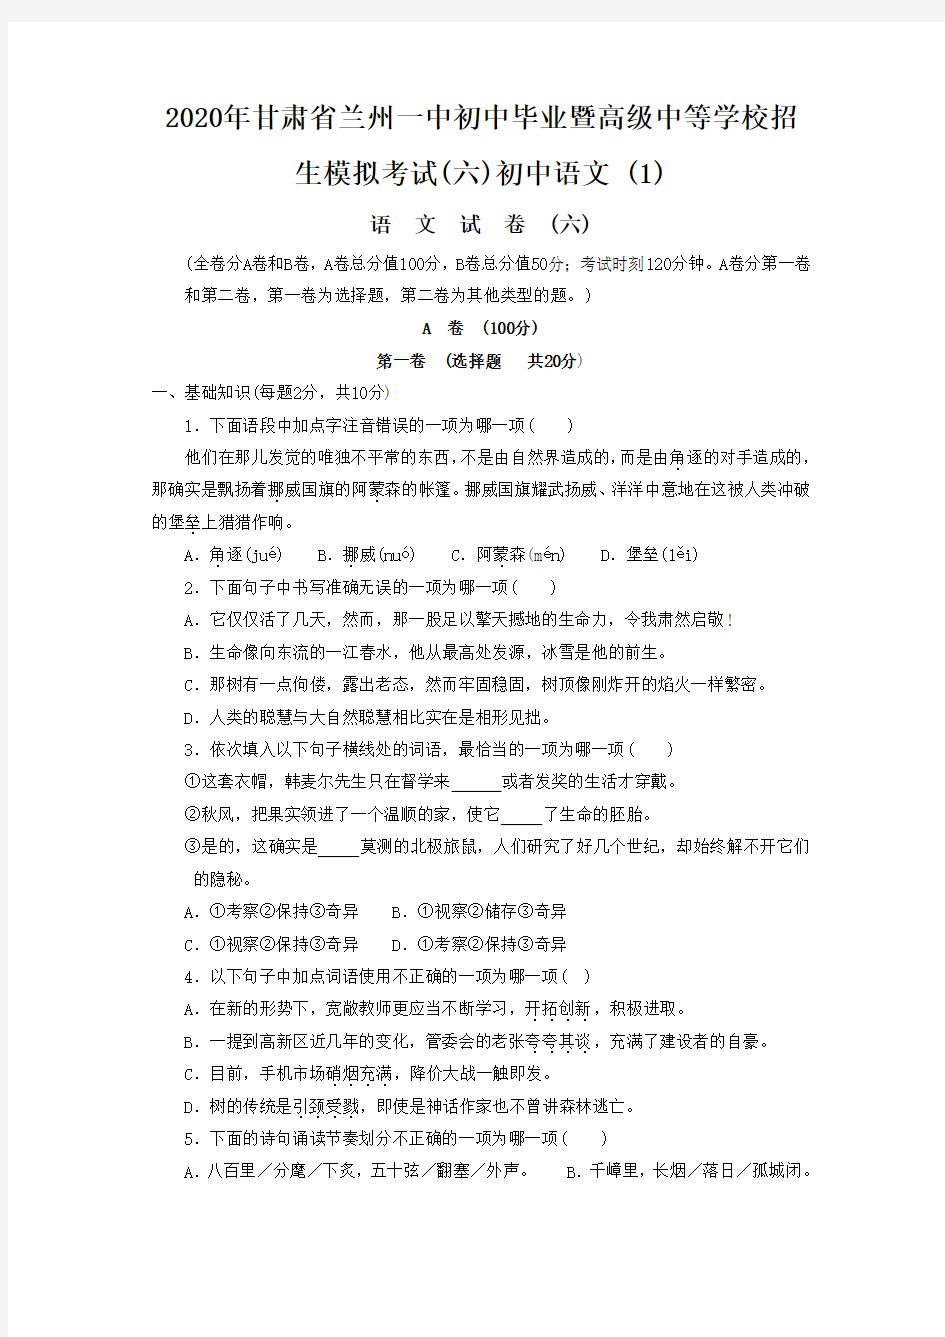 2020年甘肃省兰州一中初中毕业暨高级中等学校招生模拟考试(六)初中语文 (1)